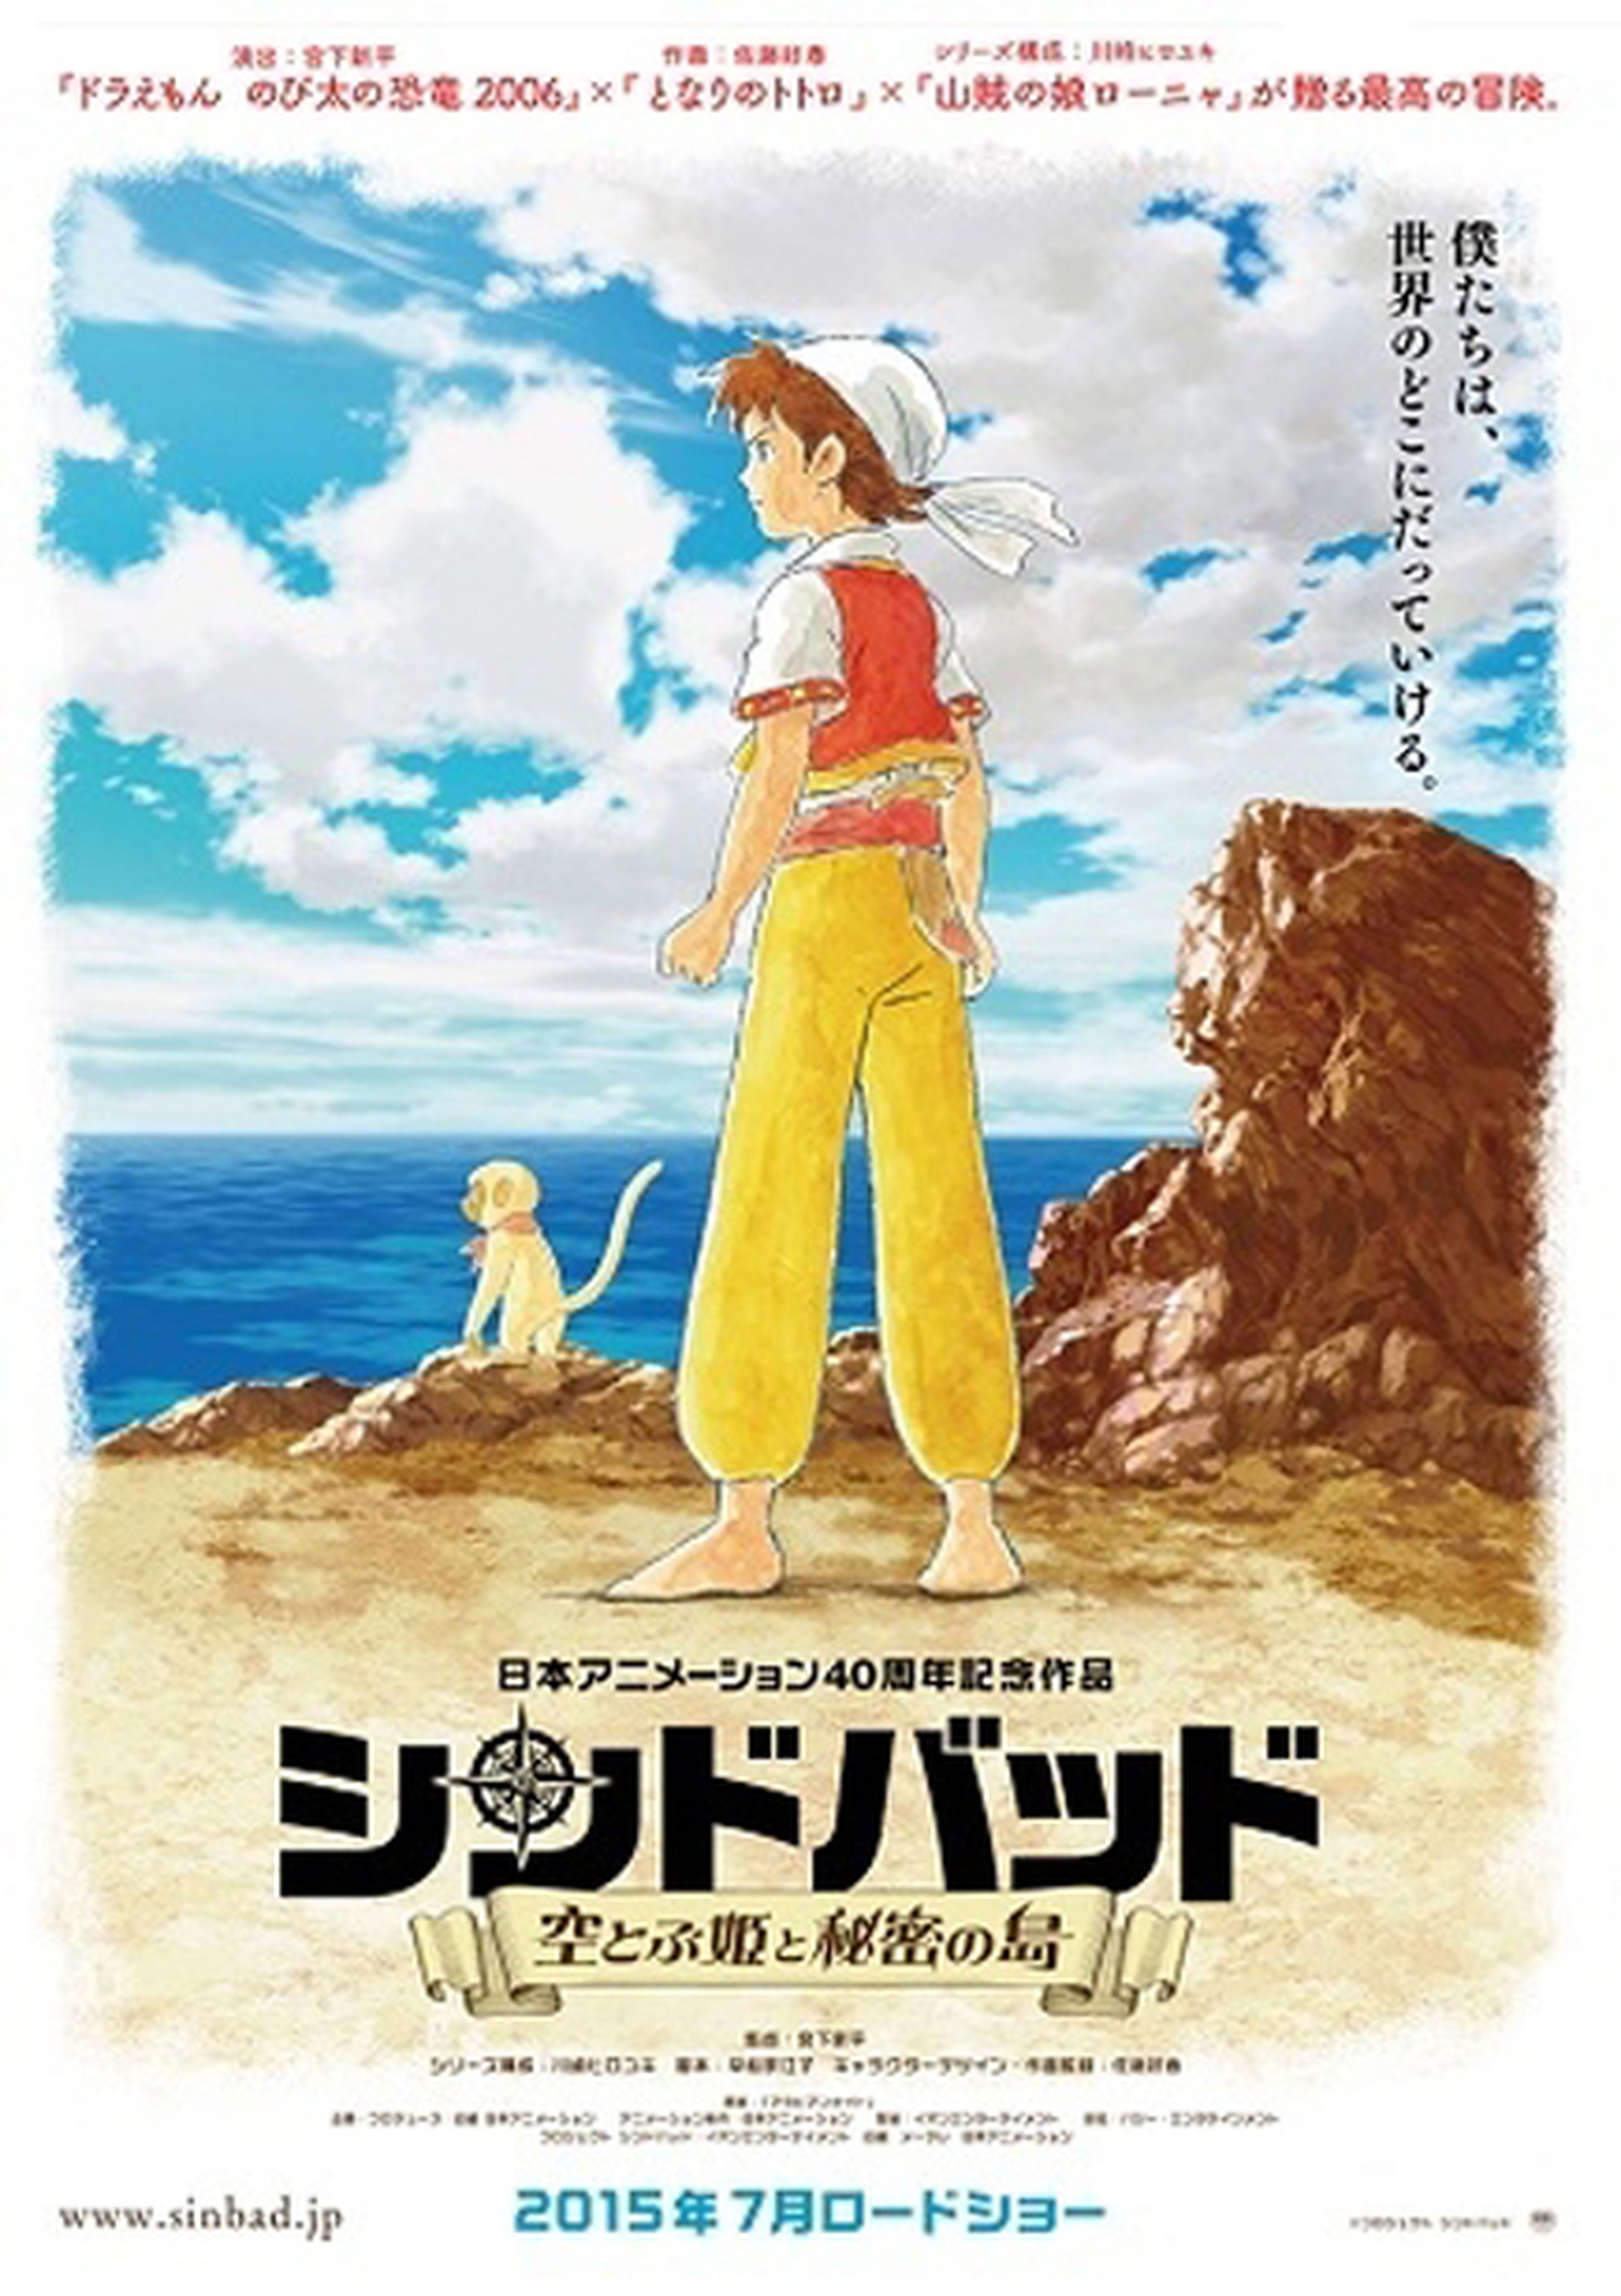 Nippon Animation celebra su 40 aniversario con una película